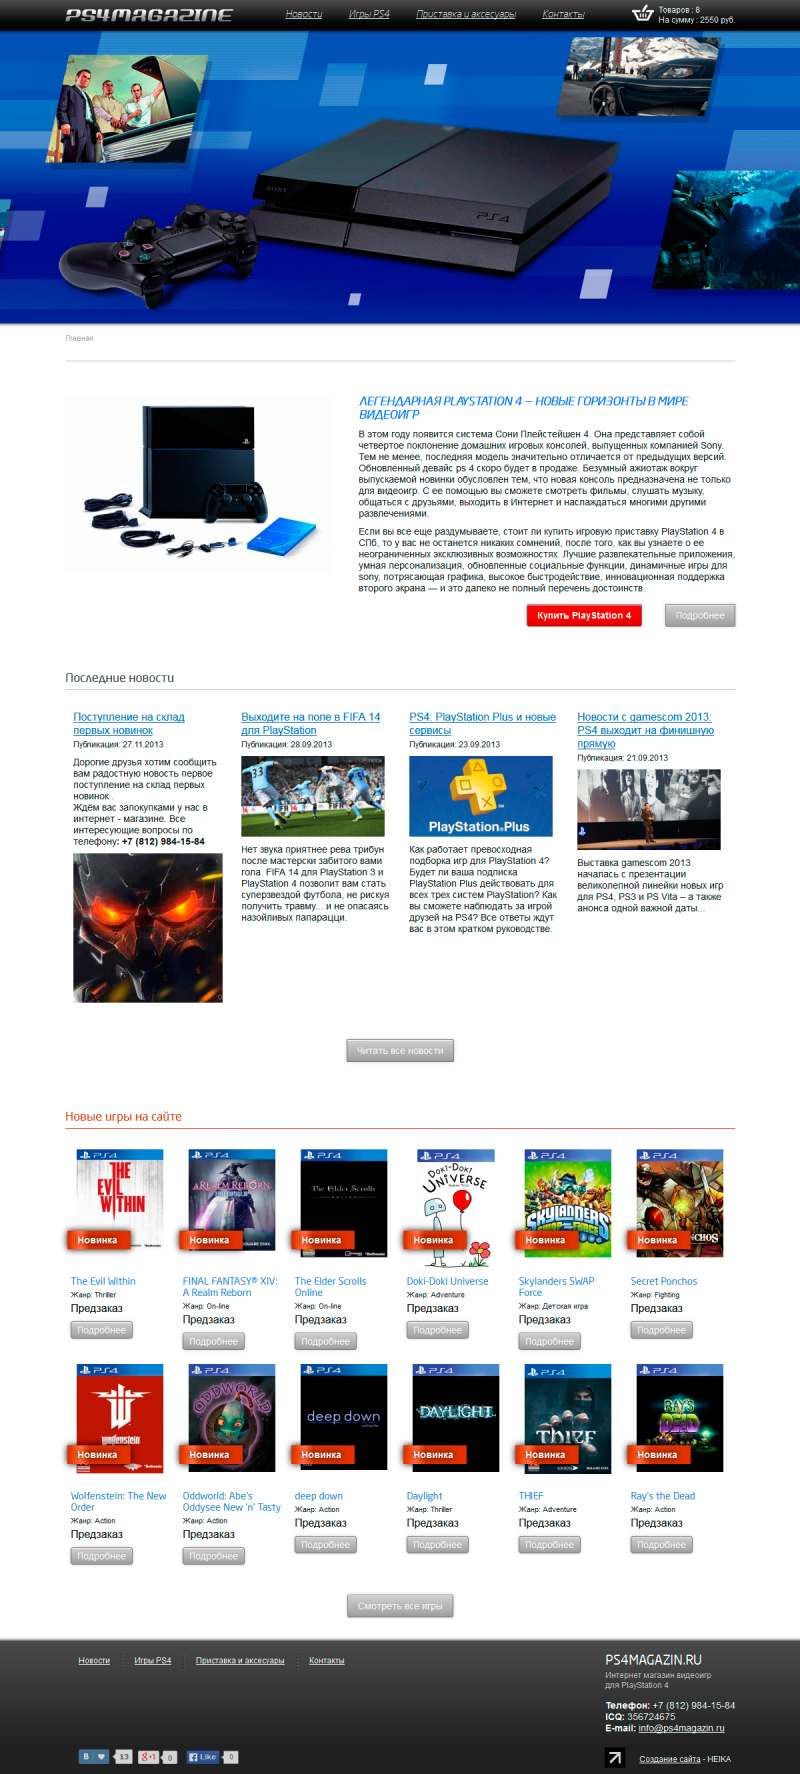 Создание сайта видео приставок и игр Sony Playstation 4